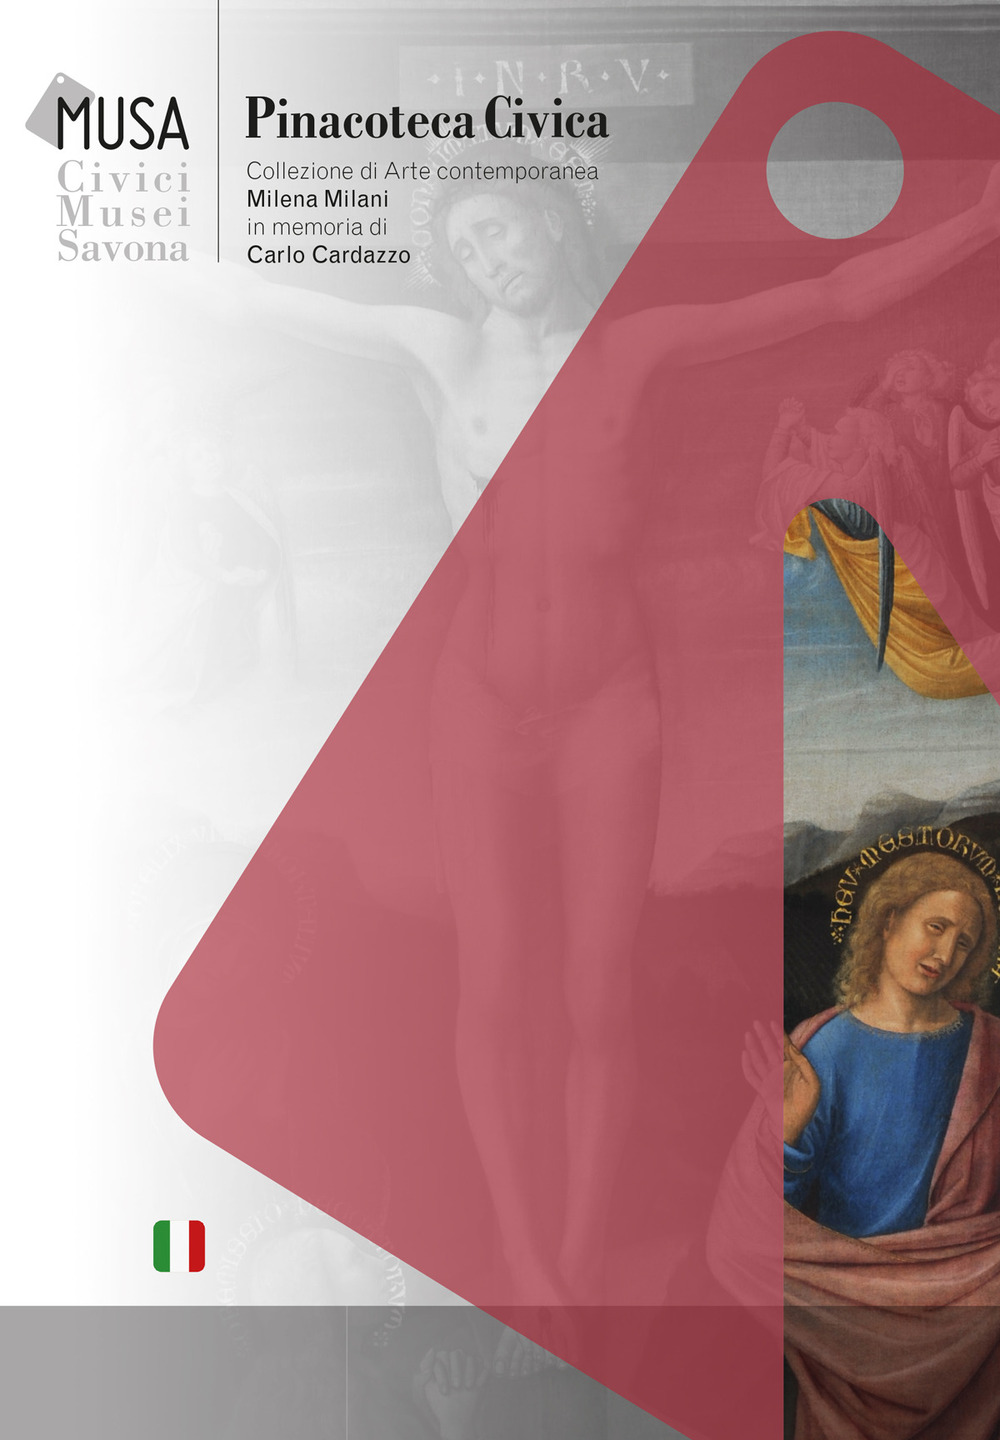 Image of MUSA. Civici Musei di Savona Pinacoteca Civica. Collezione di Arte Contemporanea Milena Milani in memoria di Carlo Cardazzo